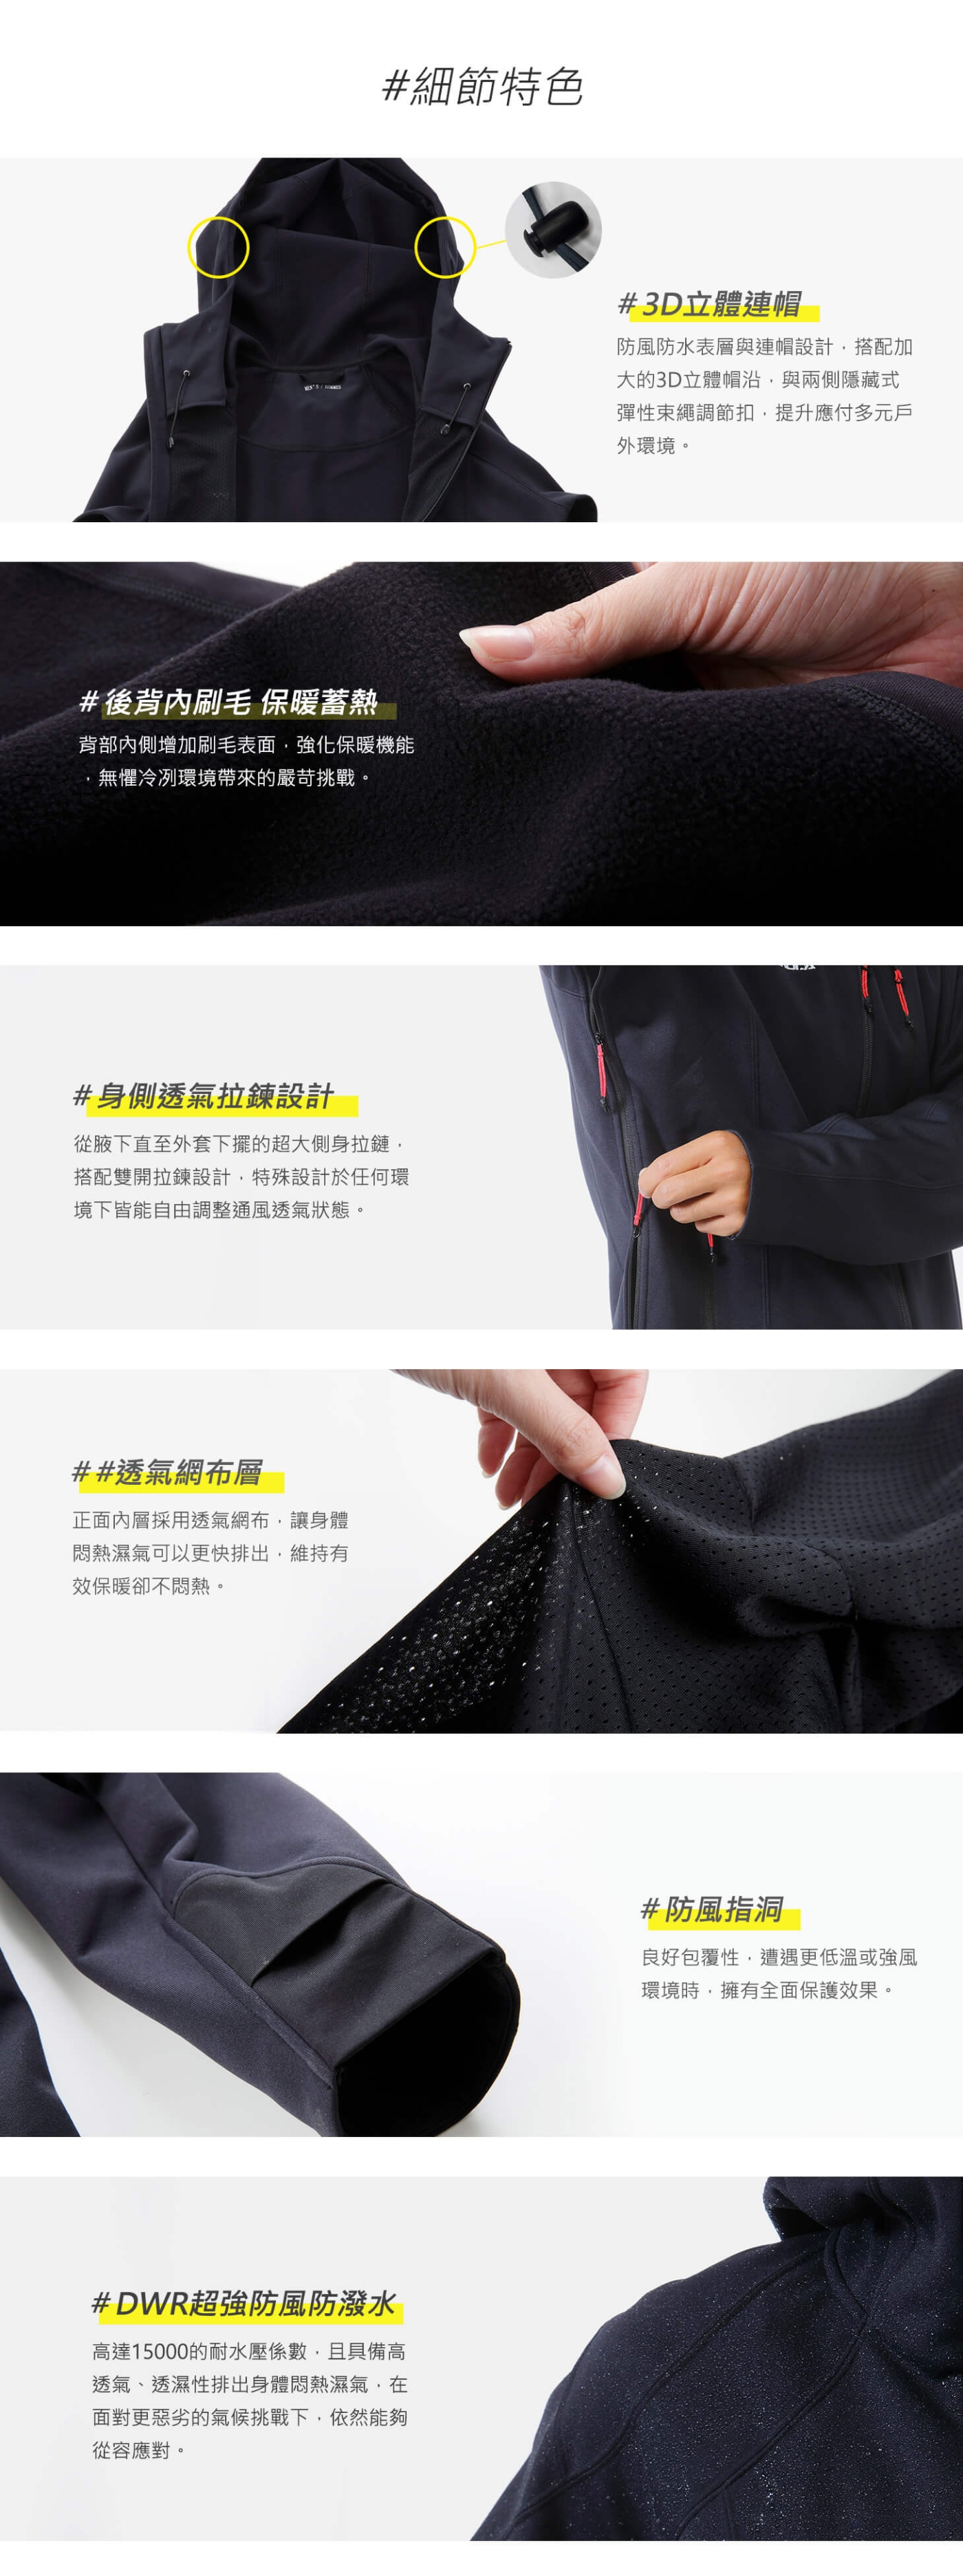 TAKODA 耐磨防風保暖軟殼機能外套 女款(黑色)